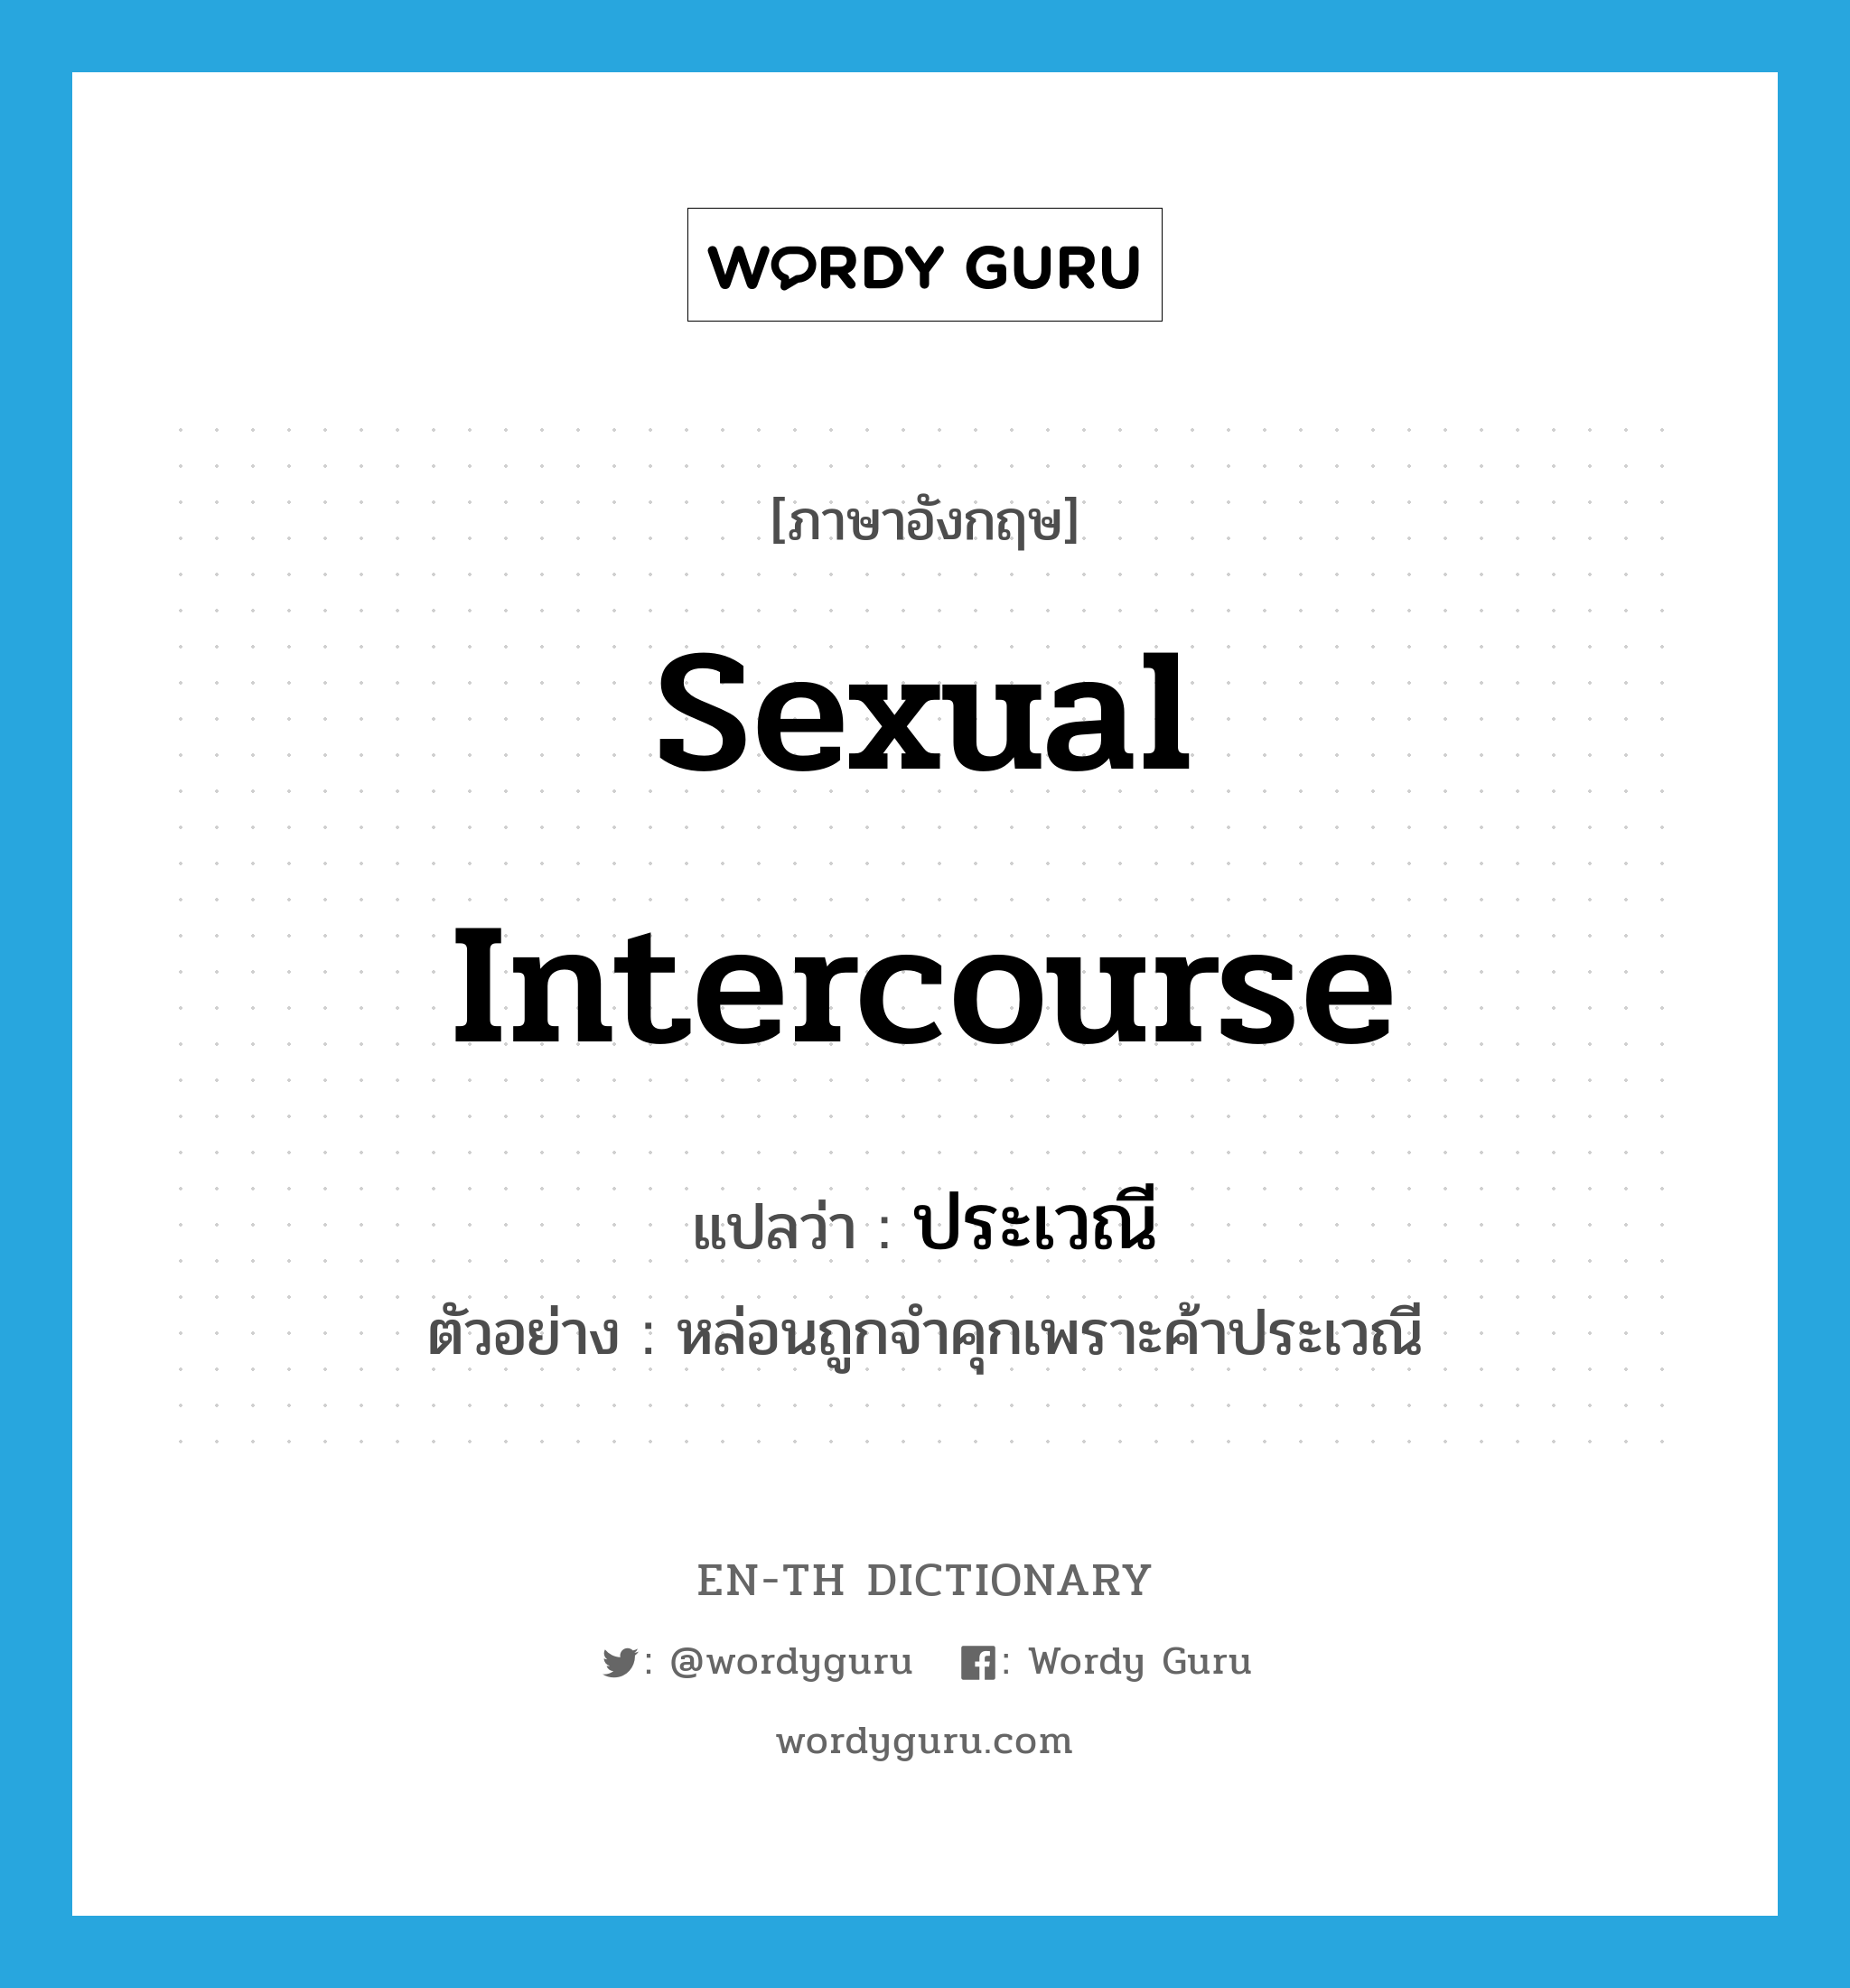 sexual intercourse แปลว่า?, คำศัพท์ภาษาอังกฤษ sexual intercourse แปลว่า ประเวณี ประเภท N ตัวอย่าง หล่อนถูกจำคุกเพราะค้าประเวณี หมวด N